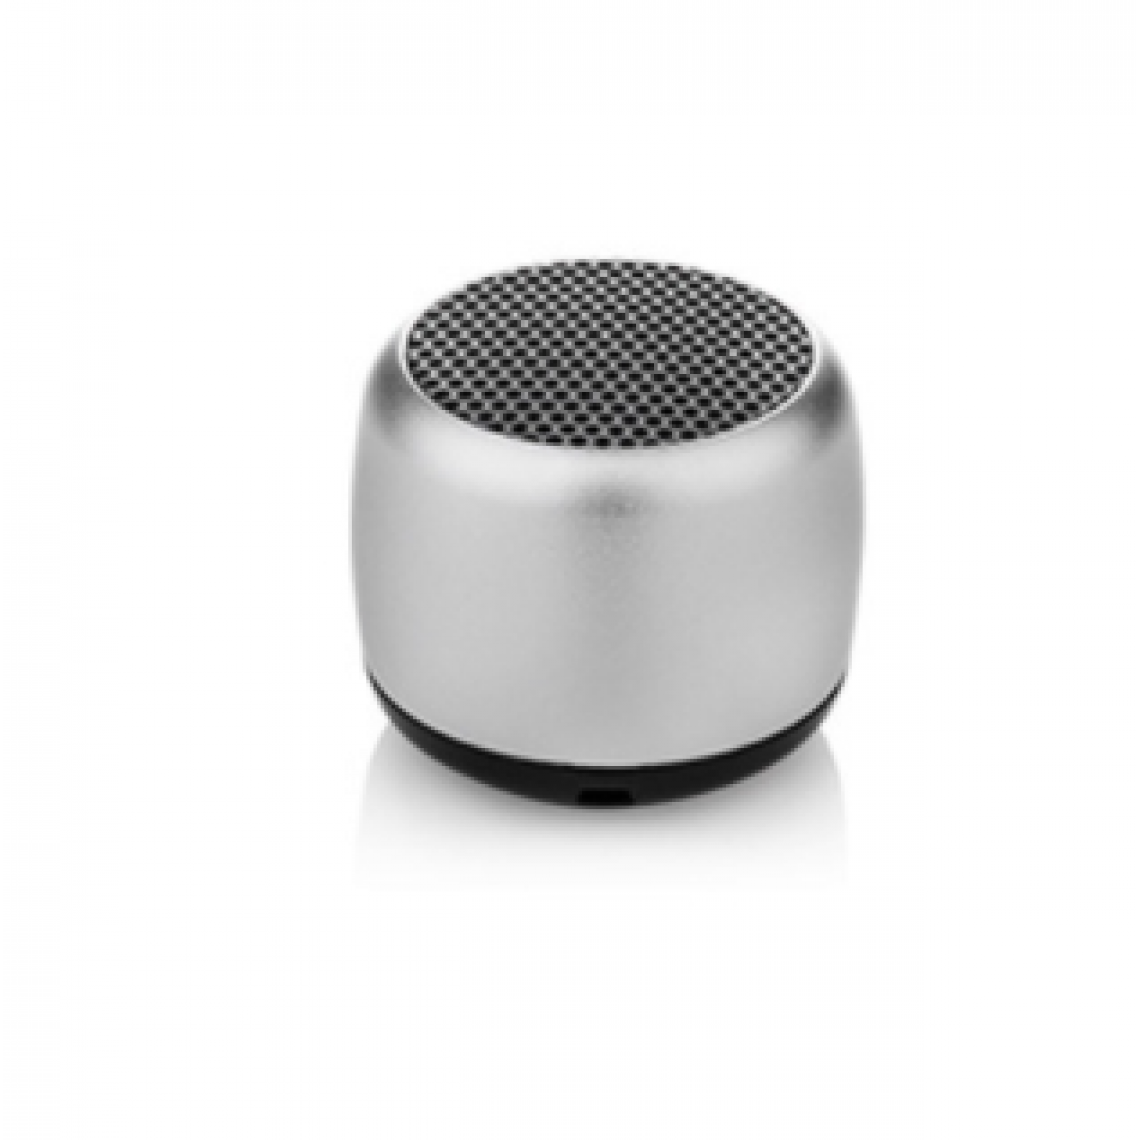 Chrono - Mini haut-parleur portable Haut-parleur sans fil Bluetooth, avec microphone, coque en métal robuste, lumière LED, 5 heures de lecture, peut être associé à un son surround stéréo(Argent) - Enceinte PC